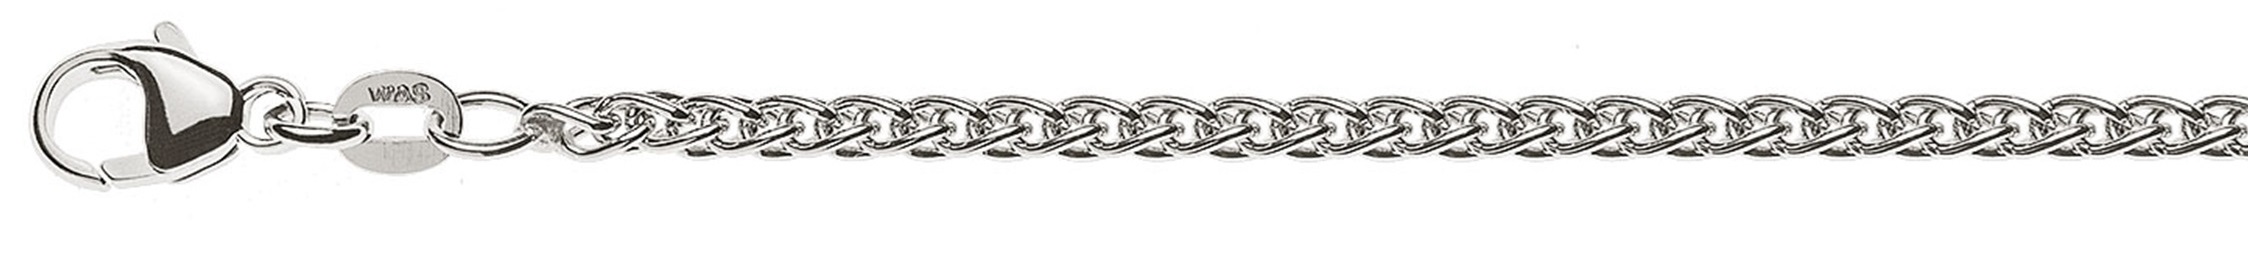 AURONOS Prestige Necklace white gold 18K cable chain 55cm 2.5mm